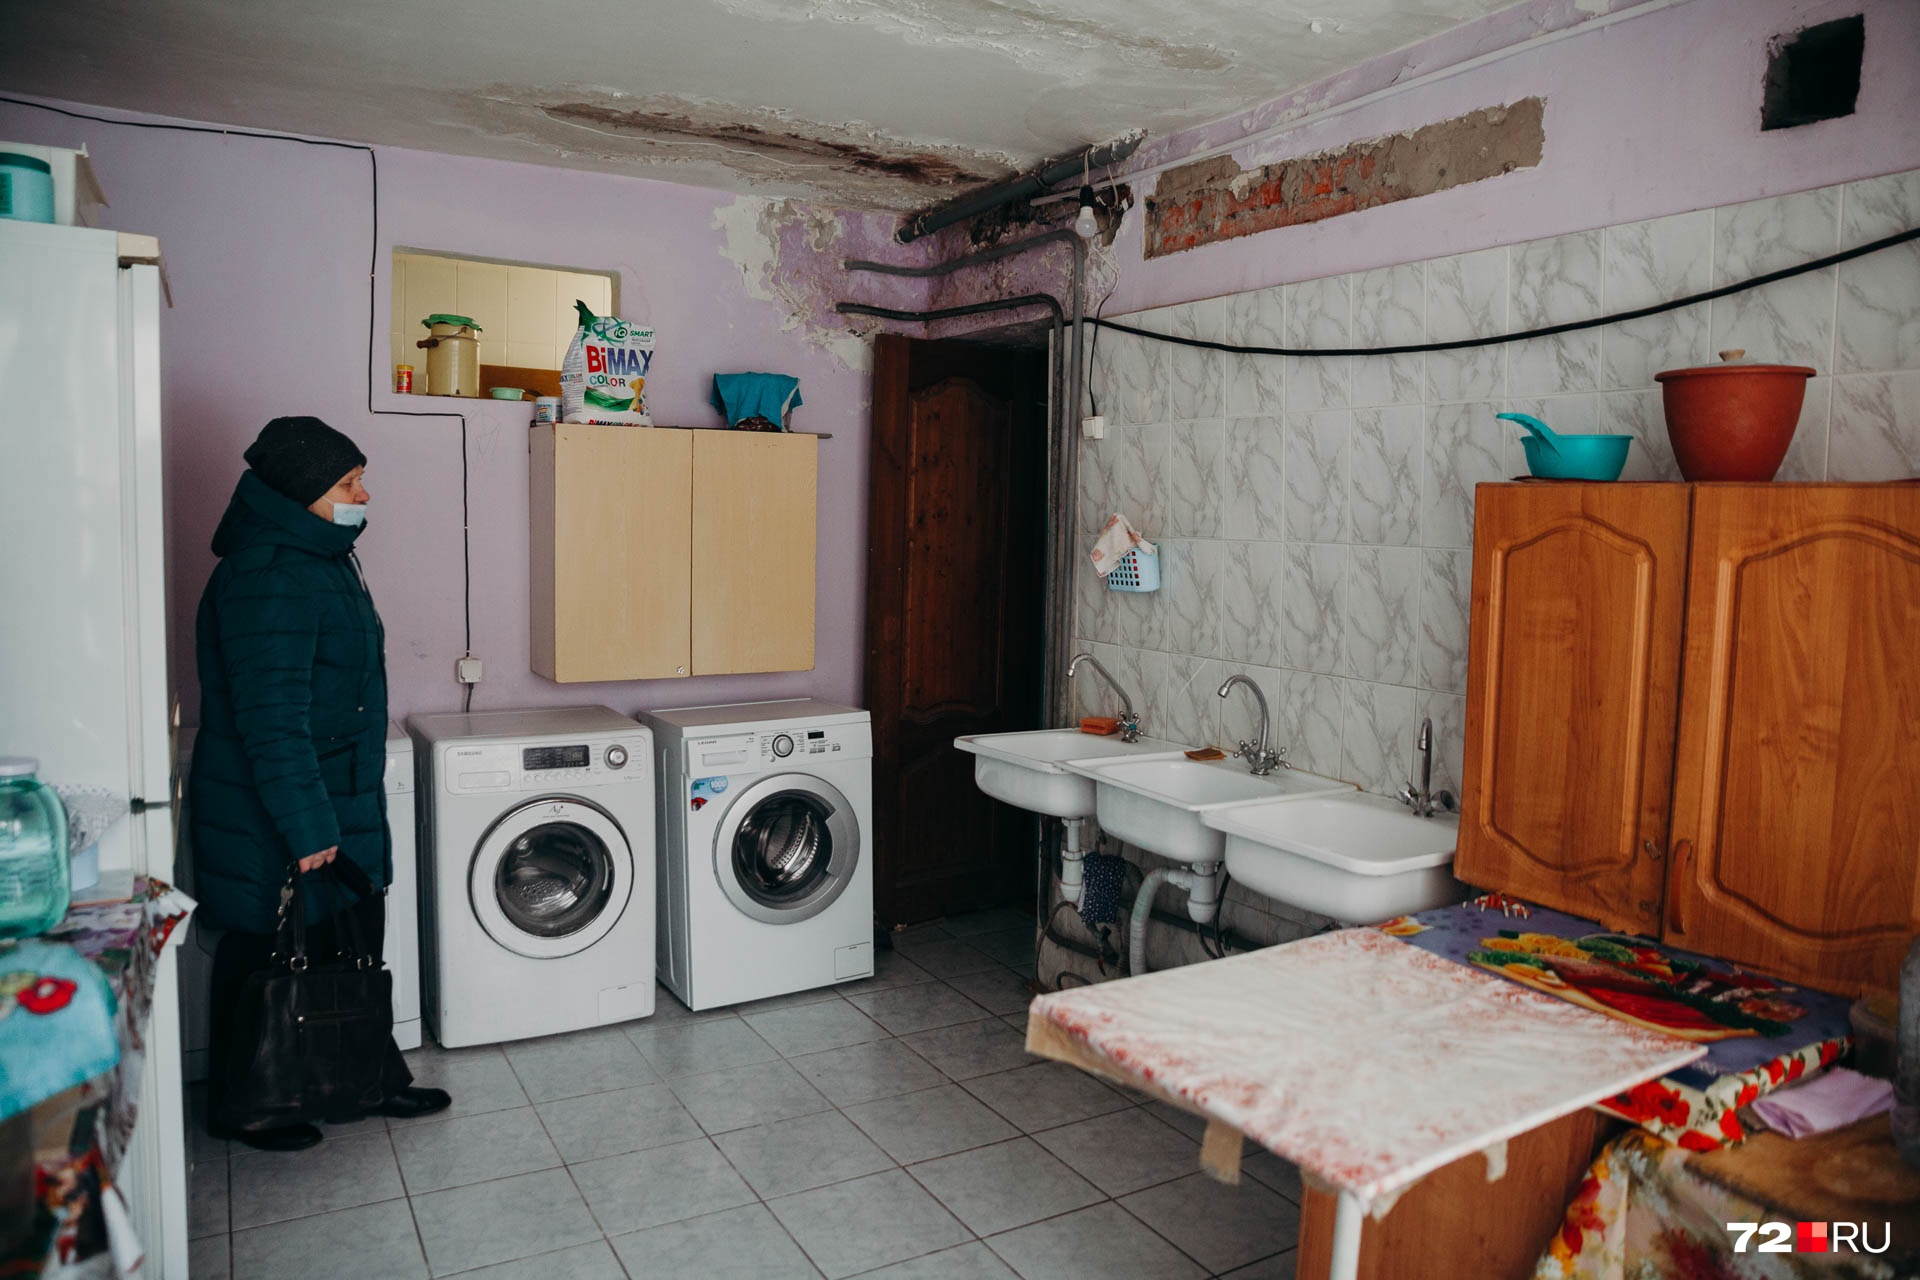 Ирина показывает кухню и место, где протекают потолки и отваливается штукатурка